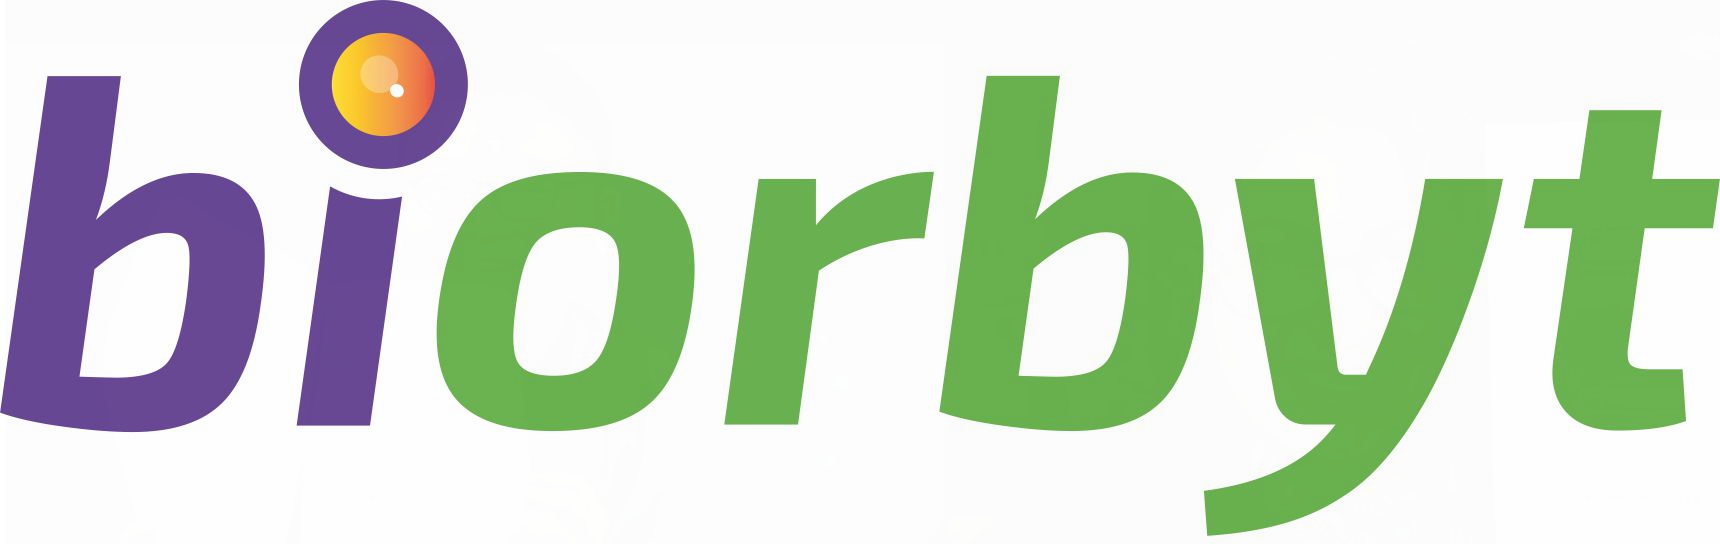 i-biorbyt-high-res-logo-no-strapline